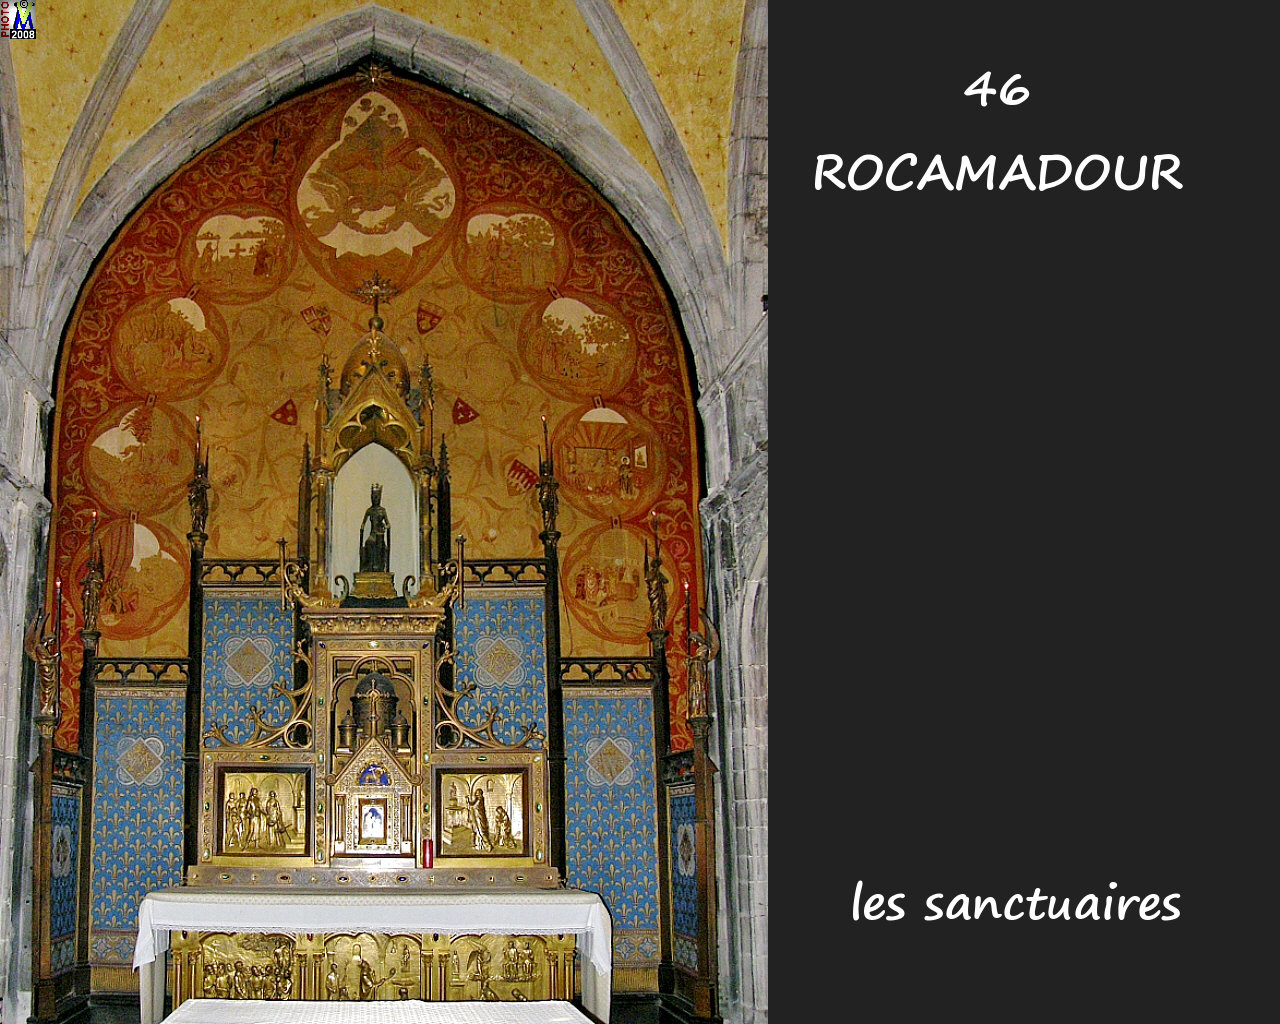 46ROCAMADOUR_sanctuaires_602.jpg